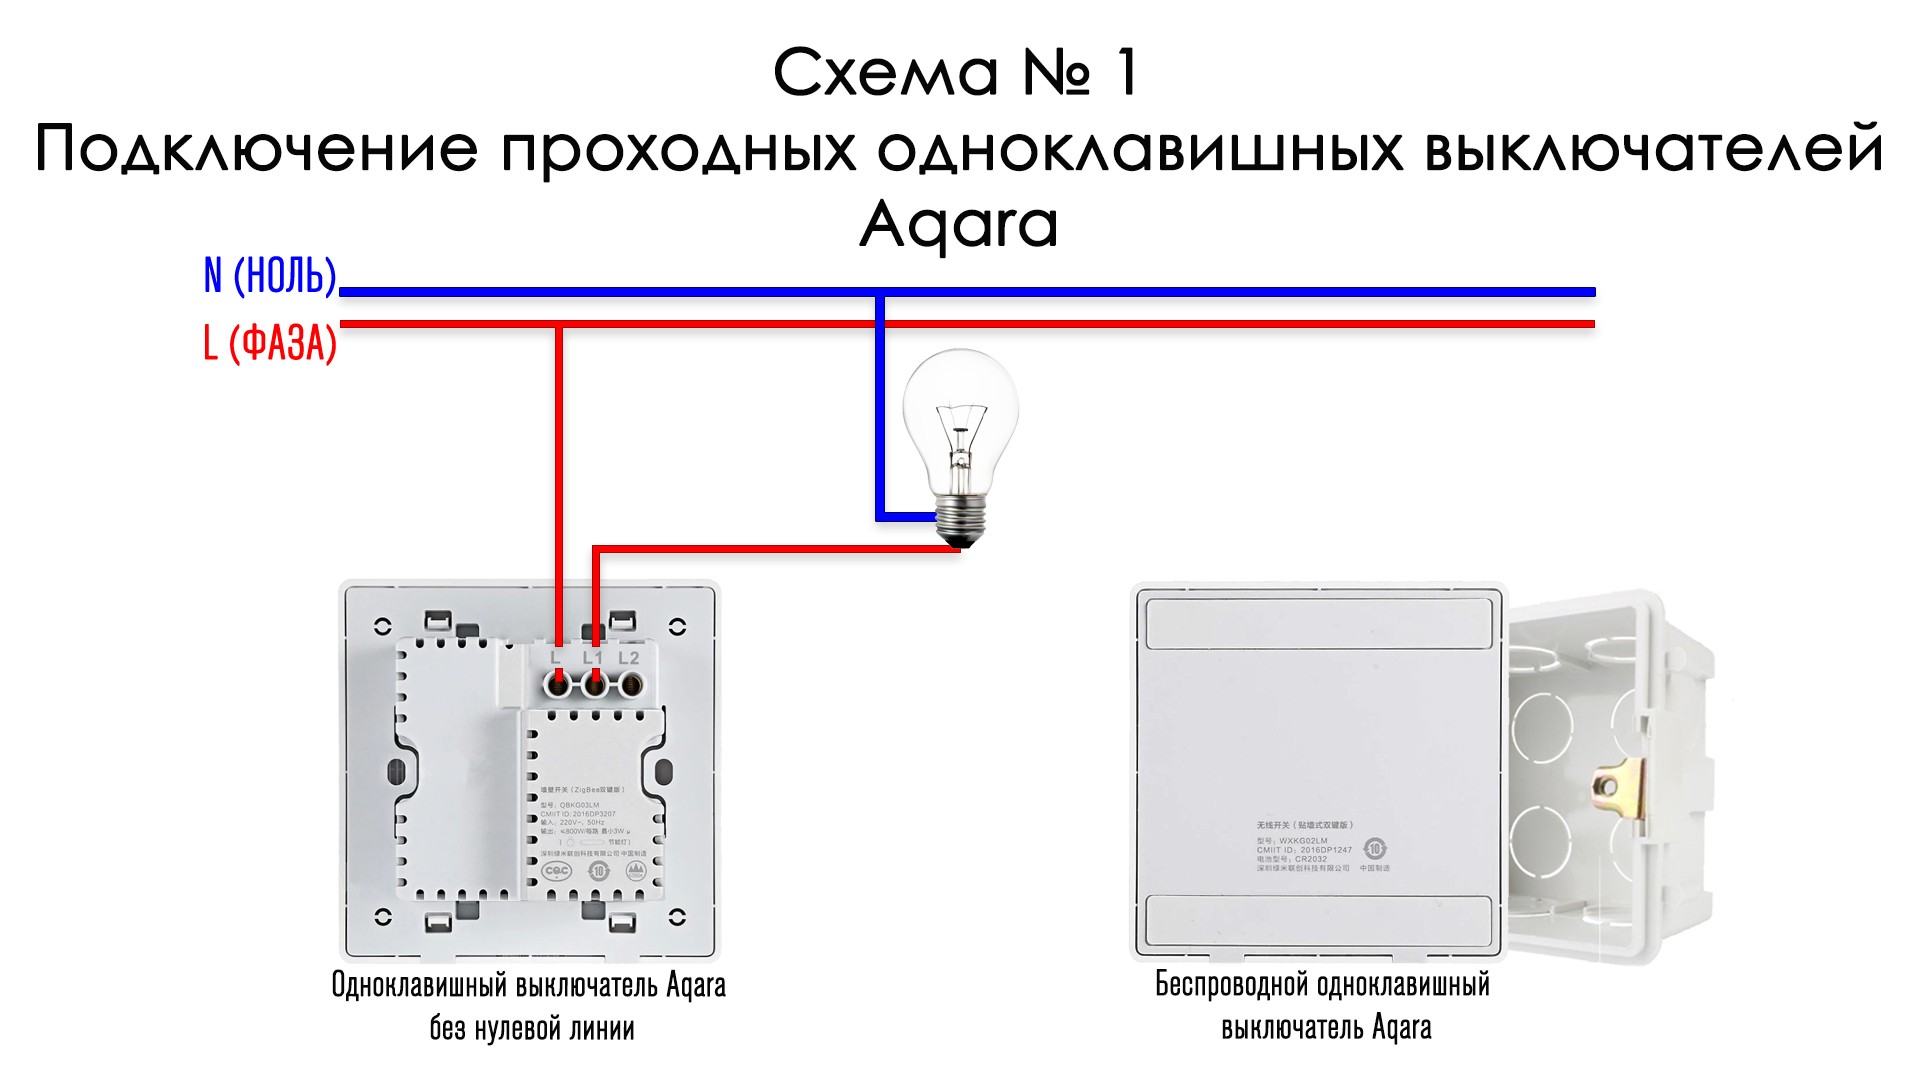 Aqara e1 rsd m01. Схема подключения выключателя Aqara. Схема подключения выключателя с нулевой линией. Выключатель Aqara двухклавишный схема. Aqara проходной выключатель схема.